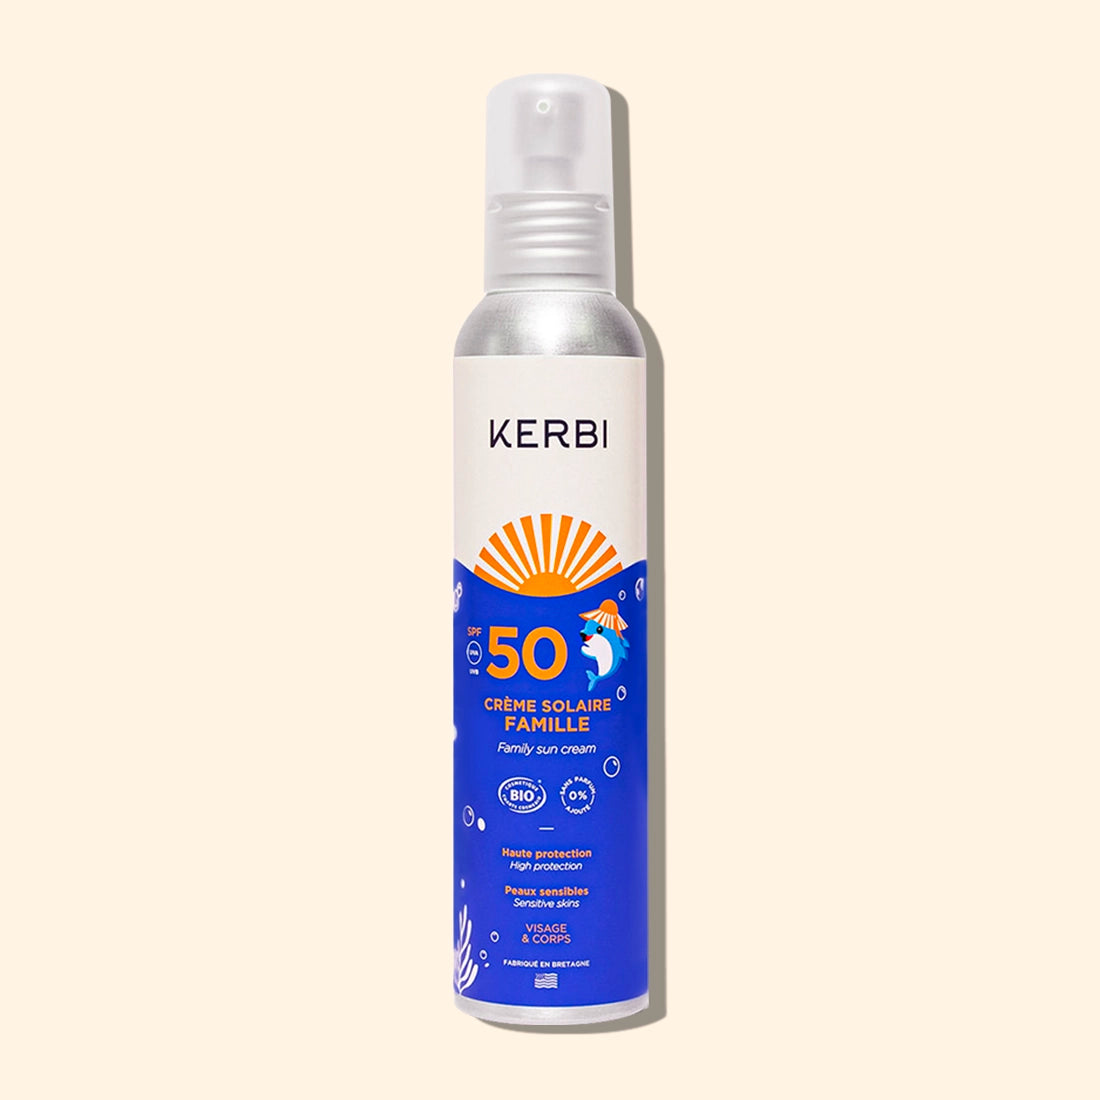 Creme solaire bio SPF50 Format Famille Kerbi - Formule douce, spécialement conçue pour la peau délicate des enfants, protection UVA/UVB